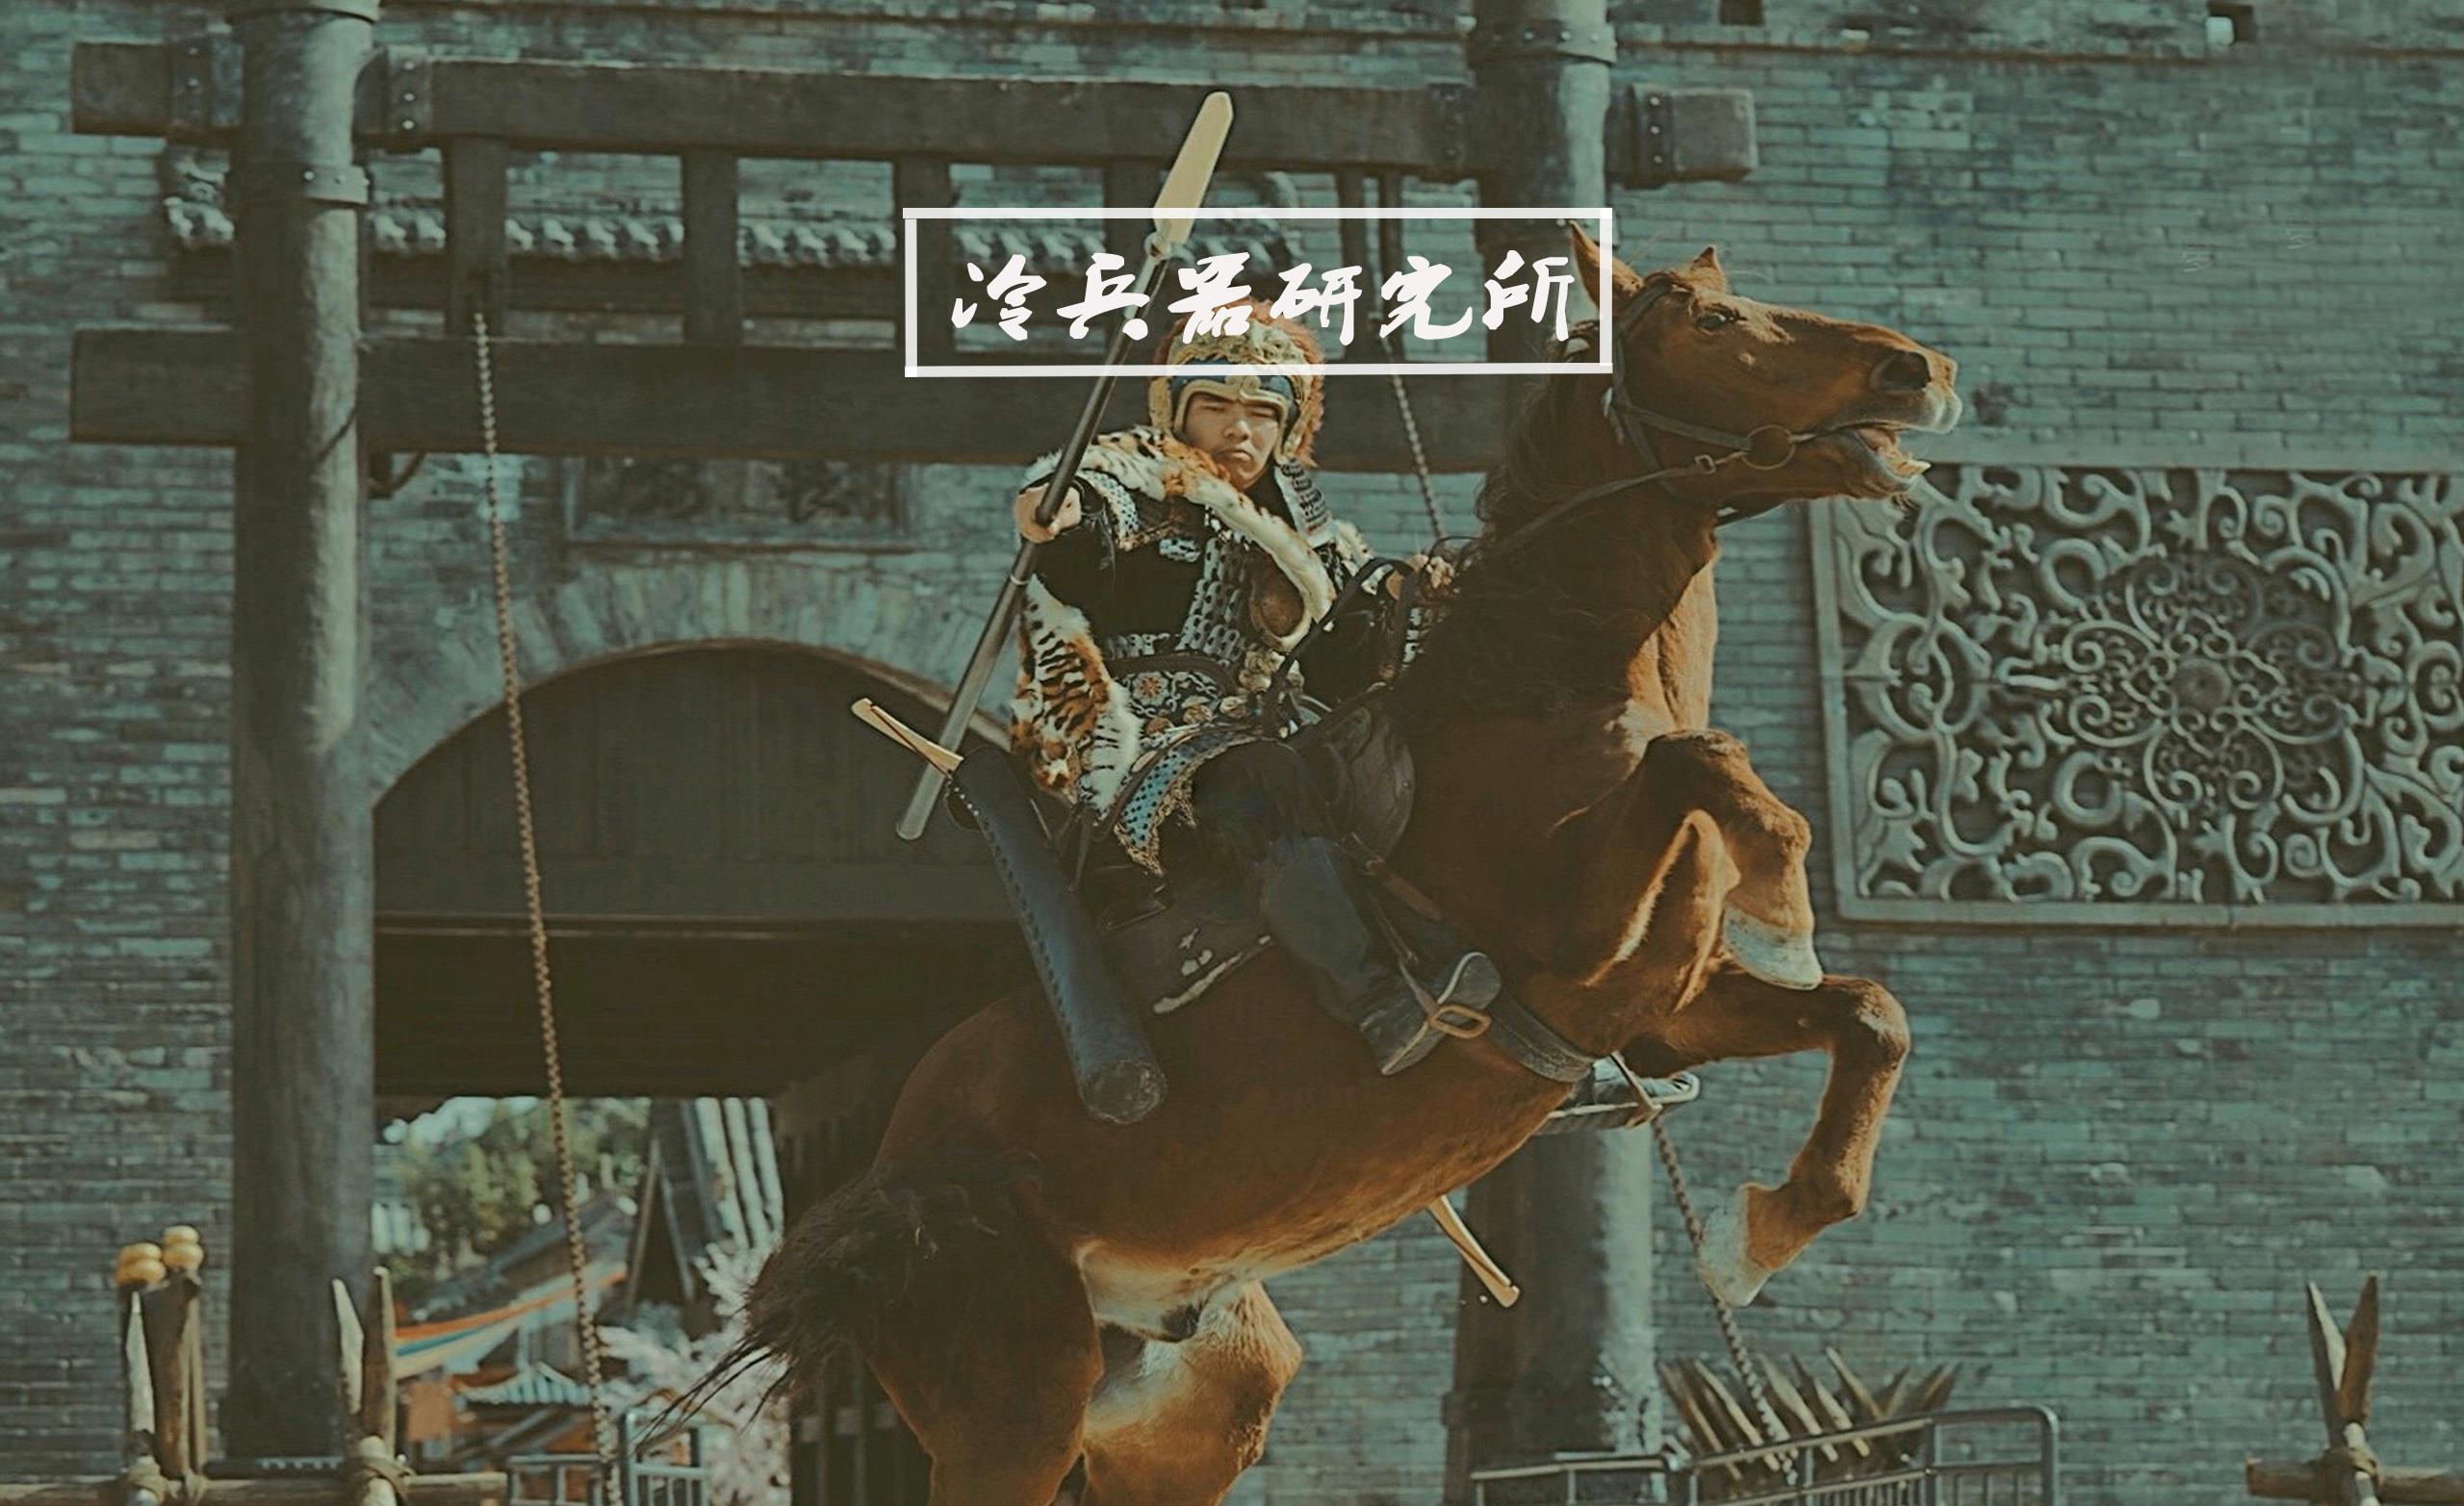 东拼西凑的马槊2.0版本来了-----------------就一个特点长长长 - 模型贴图制作与交流区 - 骑马与砍杀中文站论坛 - Powered by Discuz!